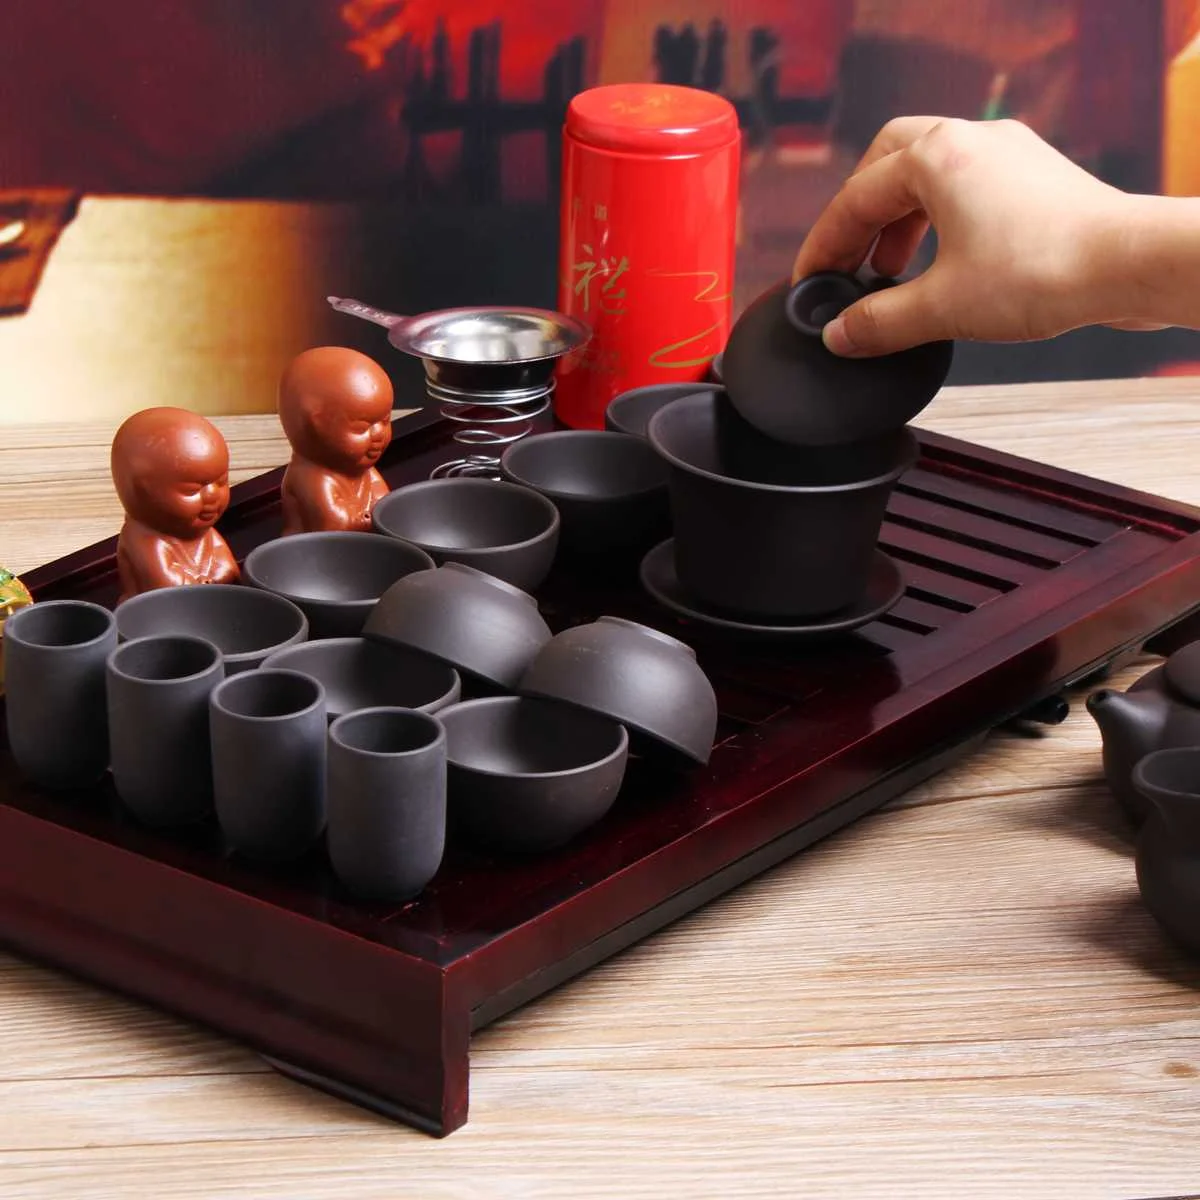 Китайский фарфор Чайный набор кунг-фу из дерева Чай лоток Чай ПЭТ Чай горшок инструменты дома Кухня Чай дом набор для чая Посуда Чай Услуги